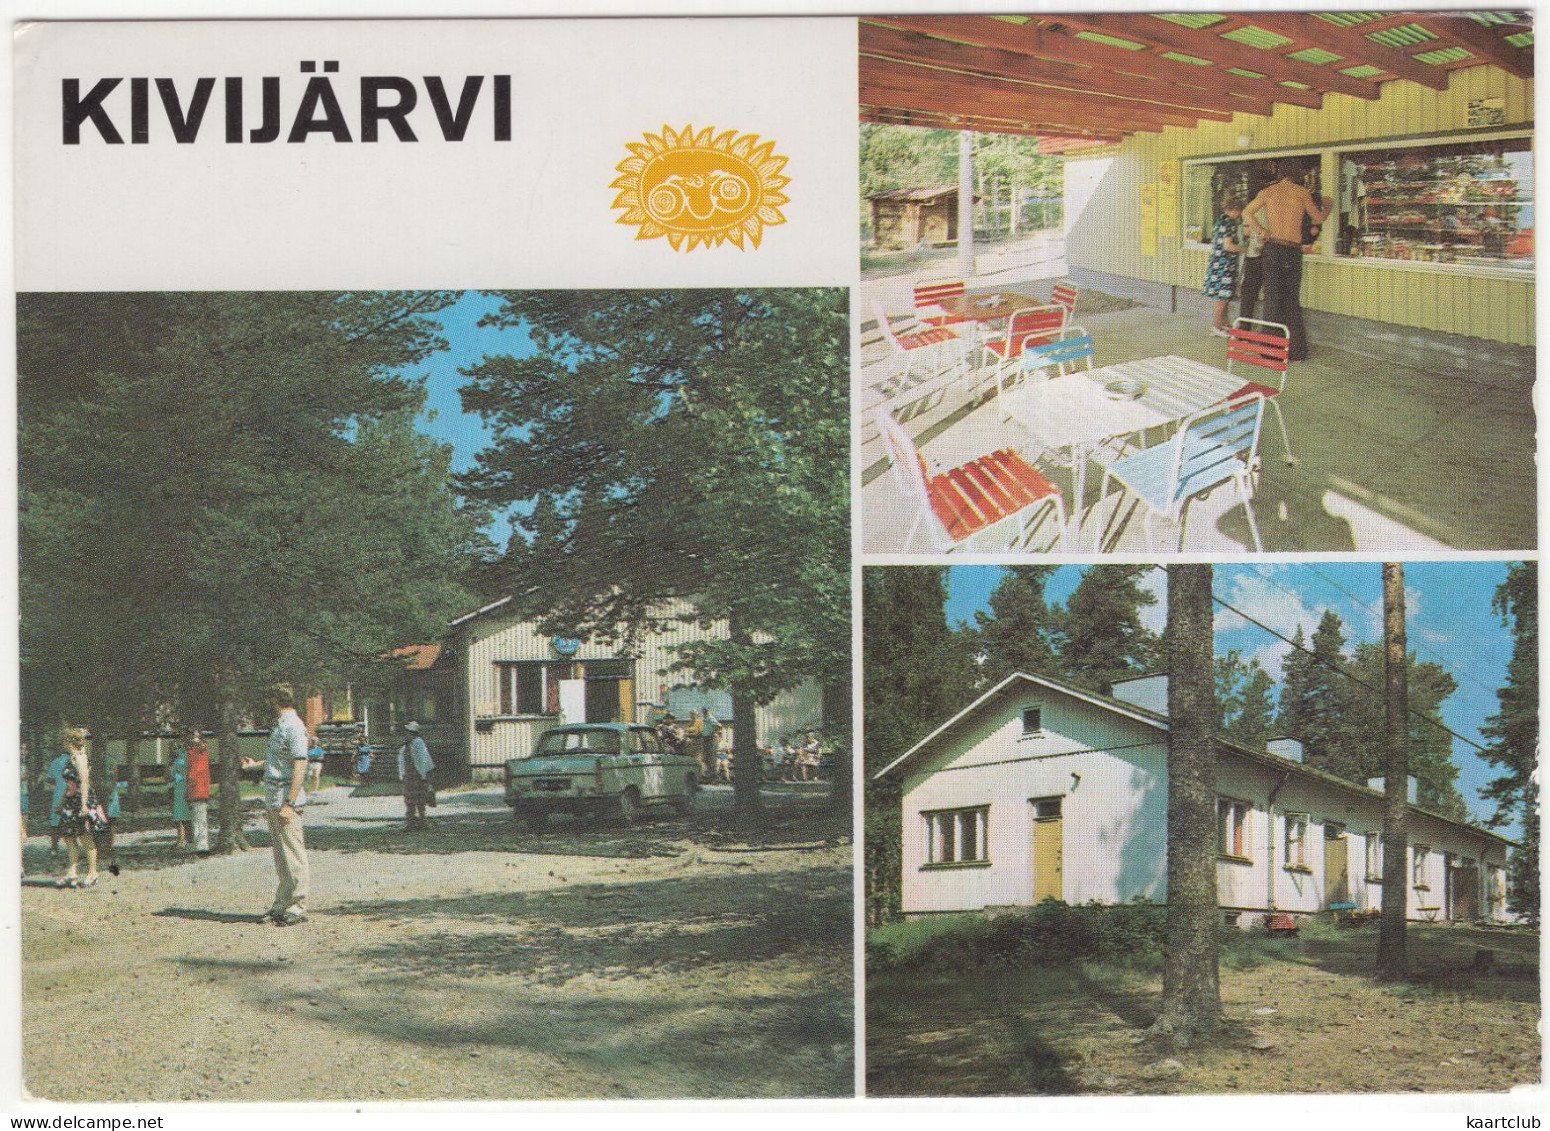 Kivijärvi: PEUGEOT 404 - Lomakylä - (Finland) - Voitures De Tourisme